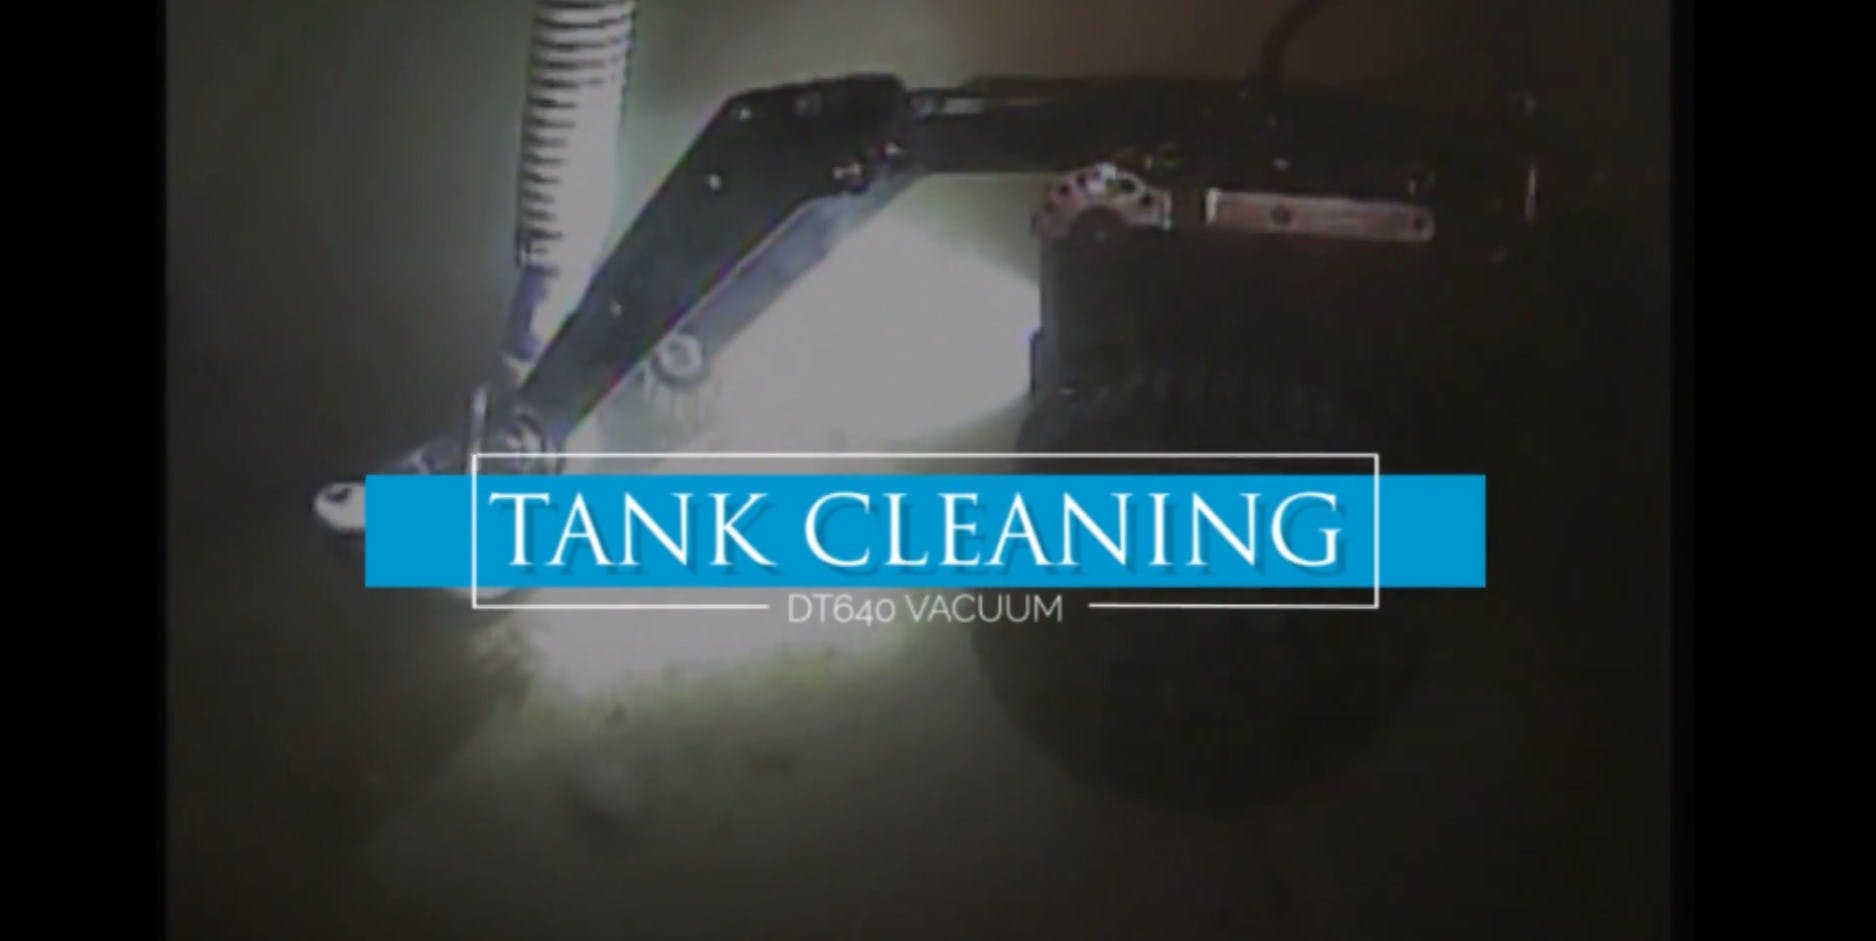 Deep Trekker DT640VAC utility crawler underwater cleaning floor of water tank